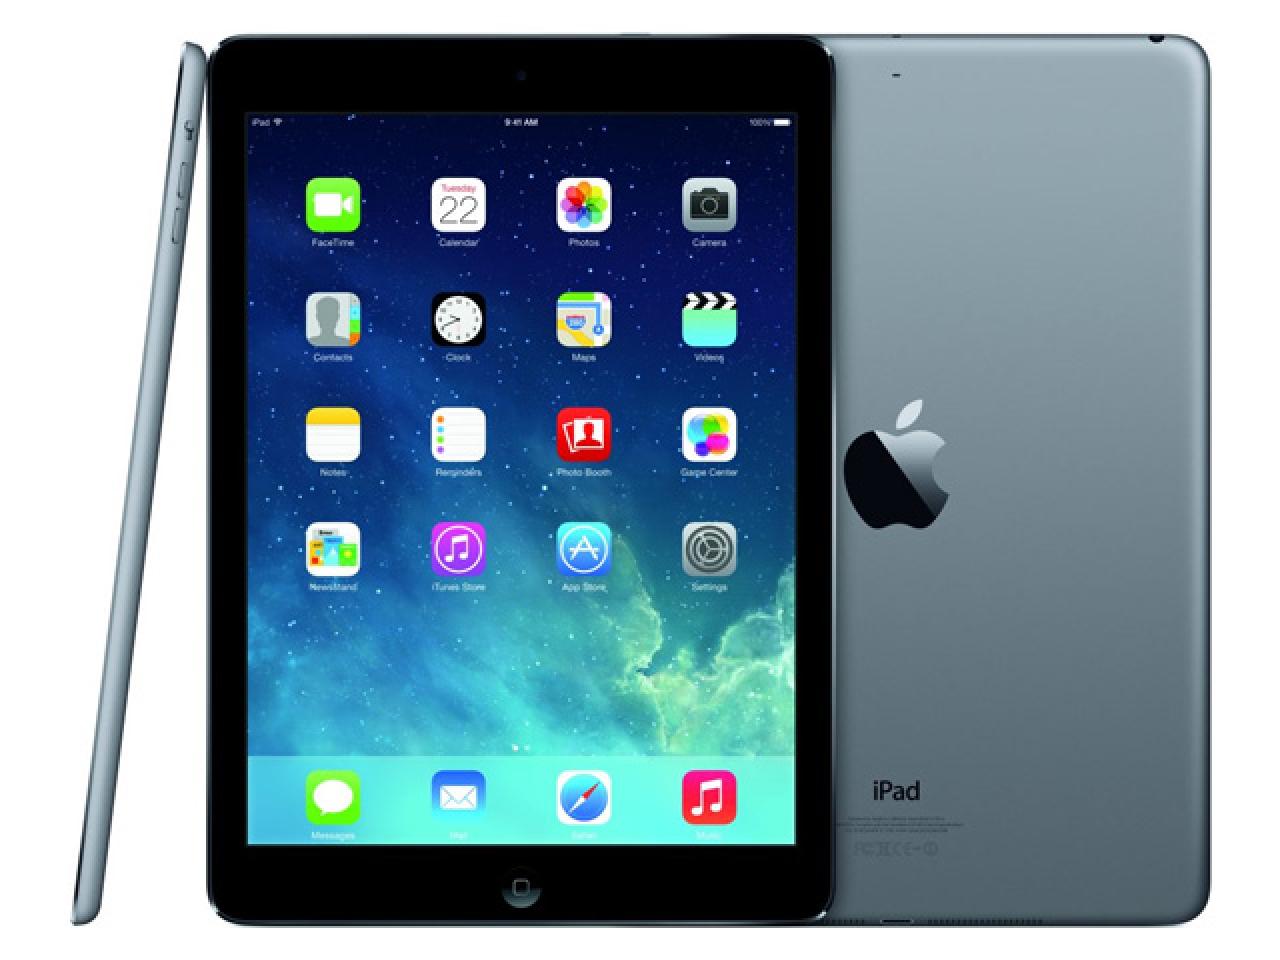 Apple iPad Air A1474 Spacegrau  - shop.bb-net.de